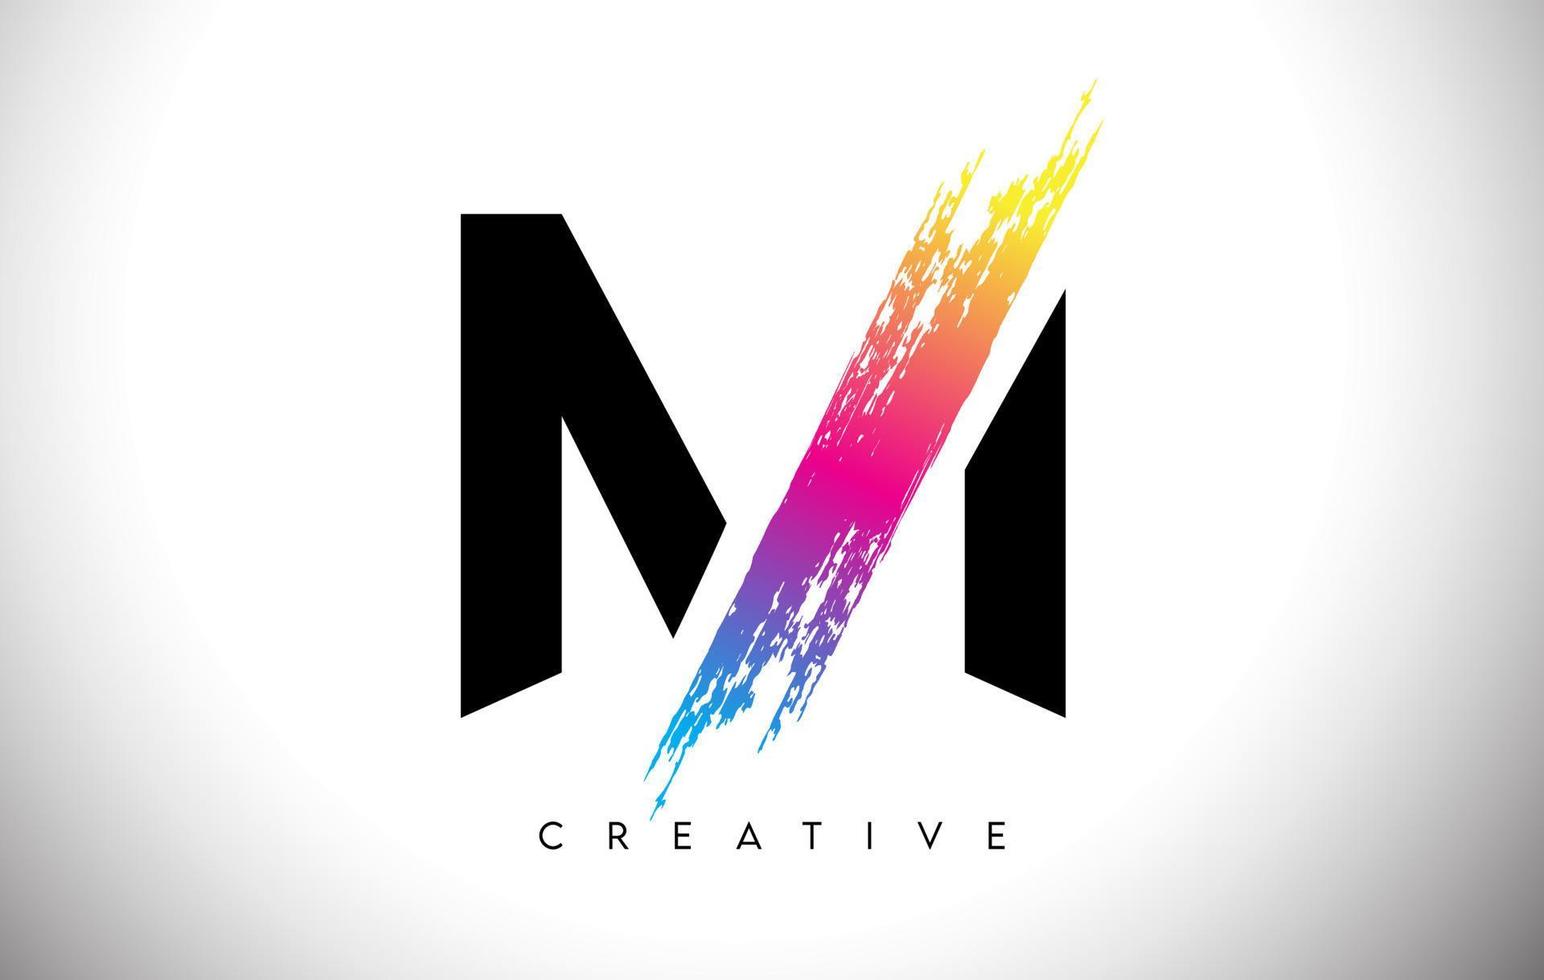 diseño de logotipo de letra artística de trazo de pincel m con vector de aspecto moderno creativo y colores vibrantes